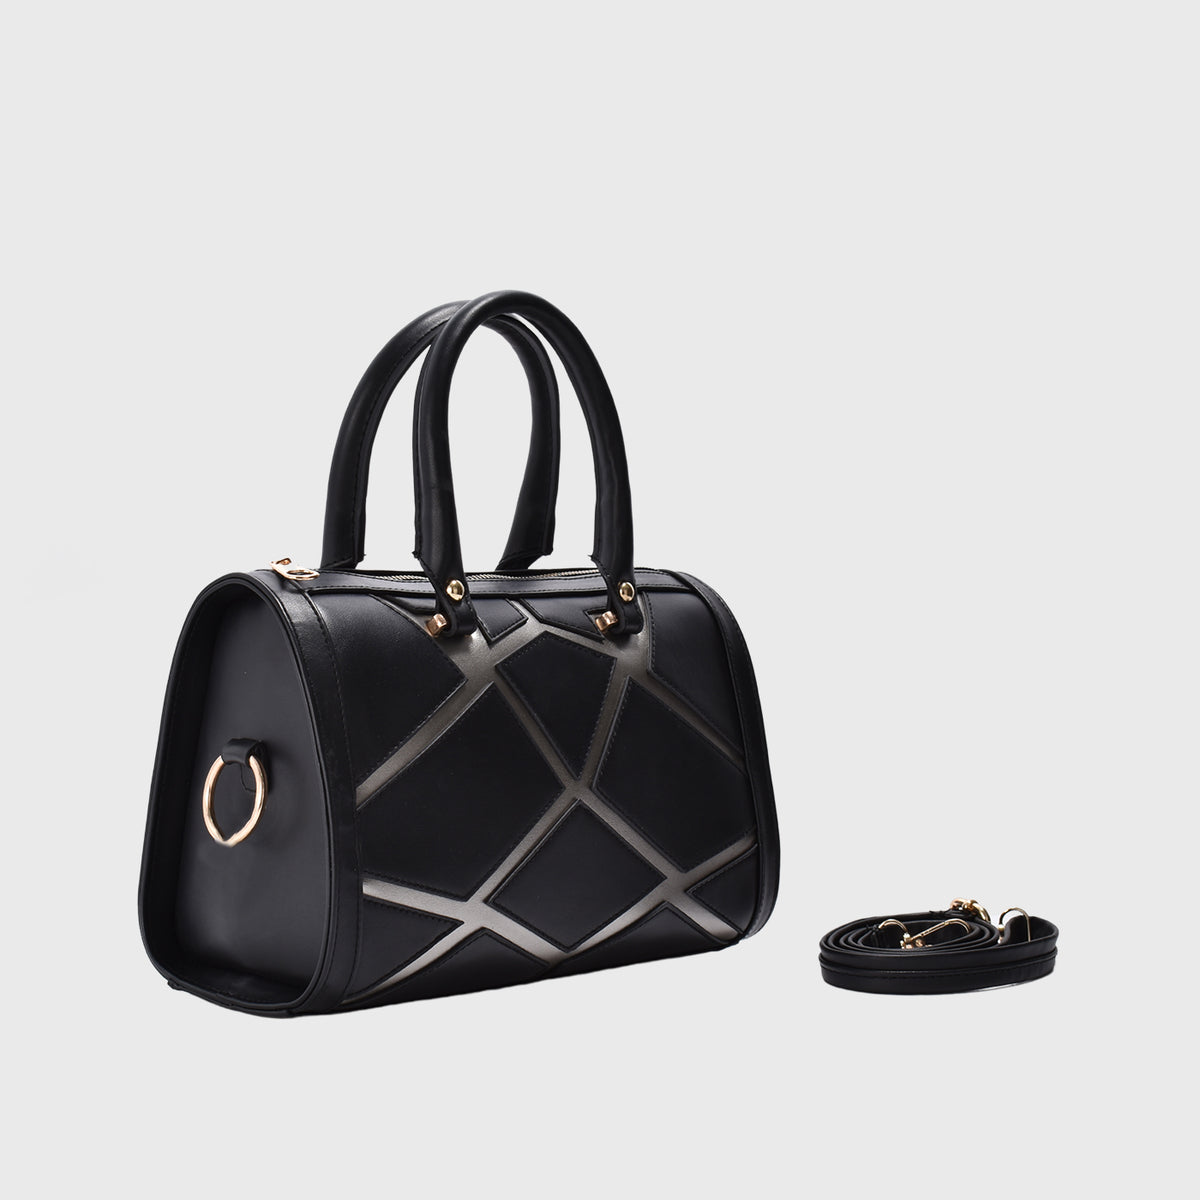 Black Leather Handbag with Details